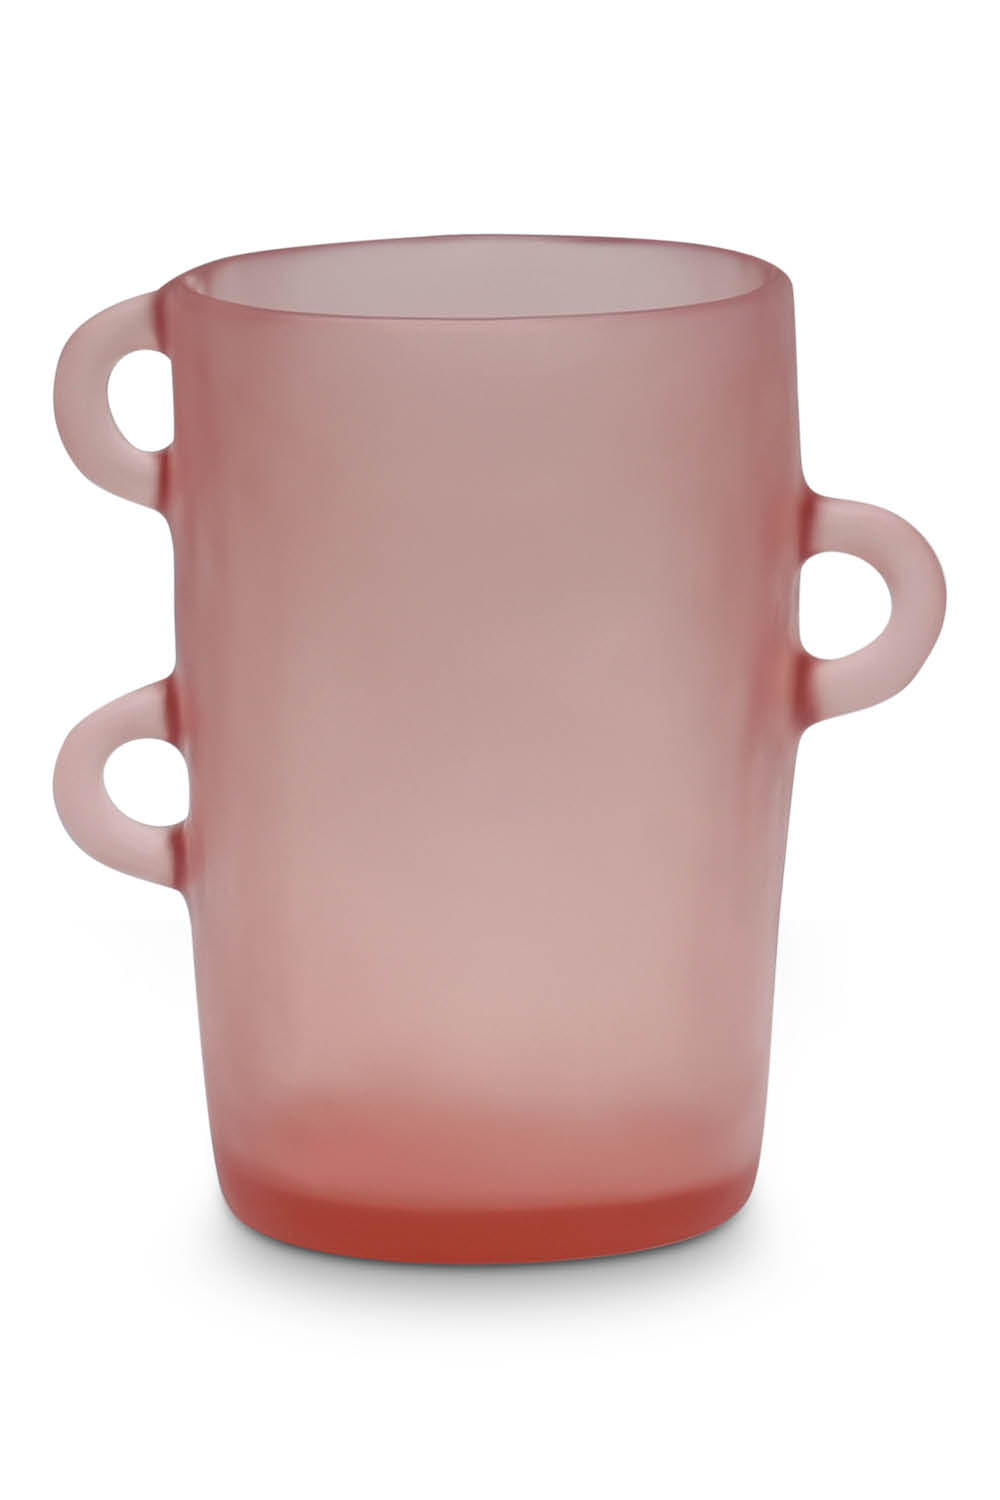 LOOPY Medium Vase in Pink